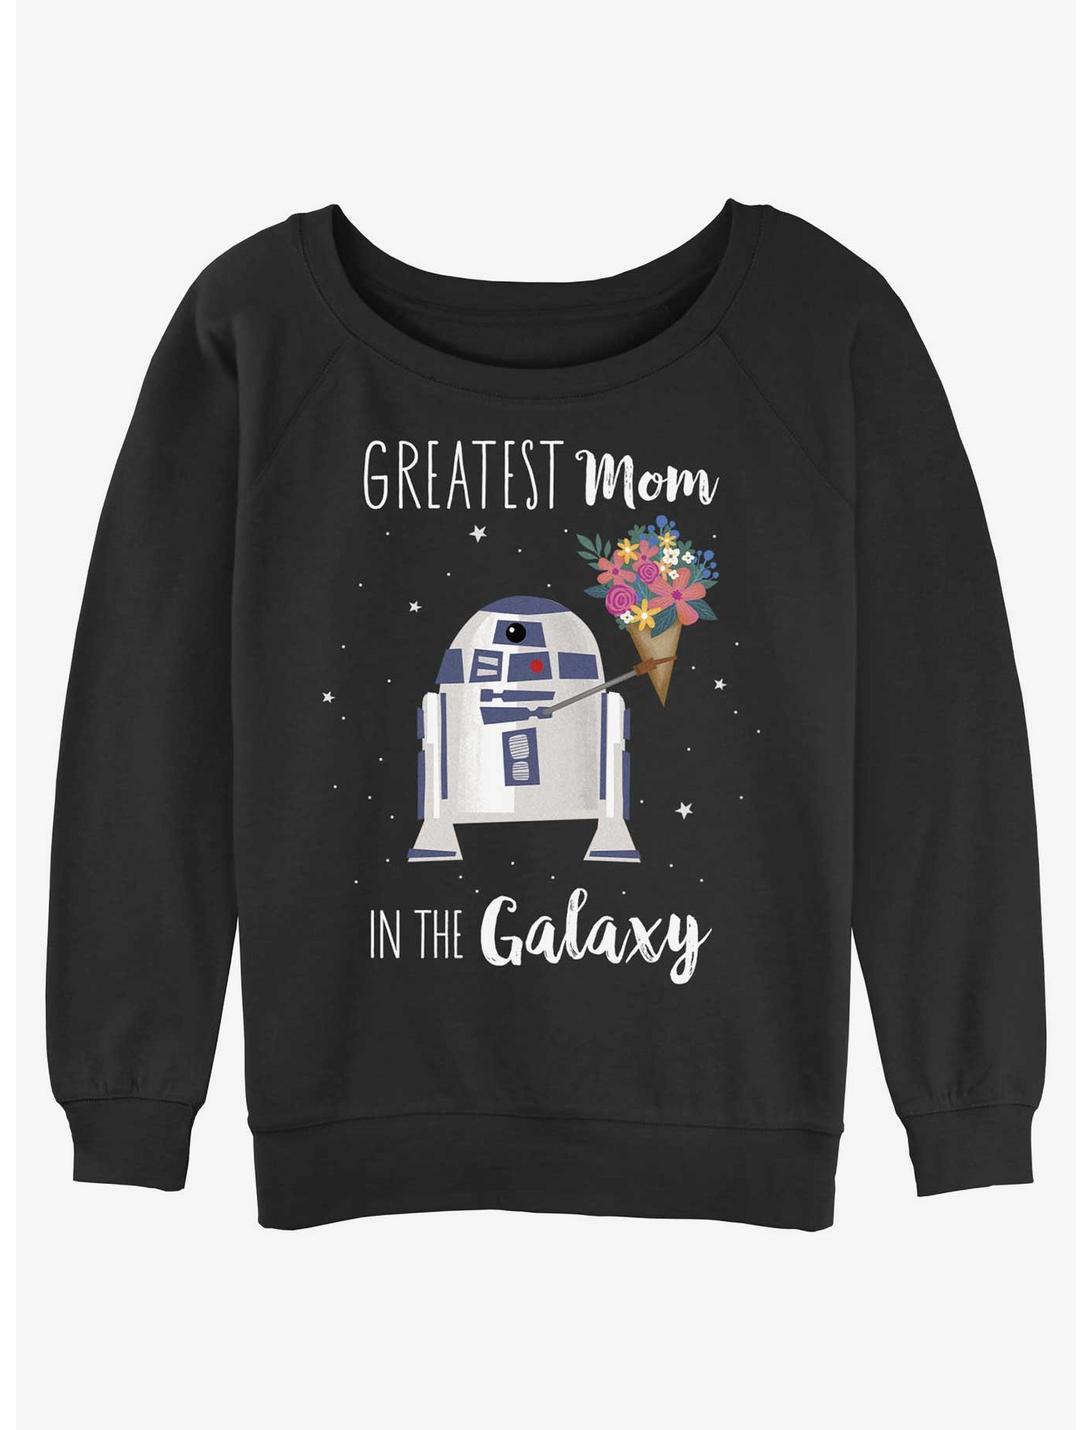 Disney Star Wars R2-D2 Greatest Mom Girls Slouchy Sweatshirt, BLACK, hi-res